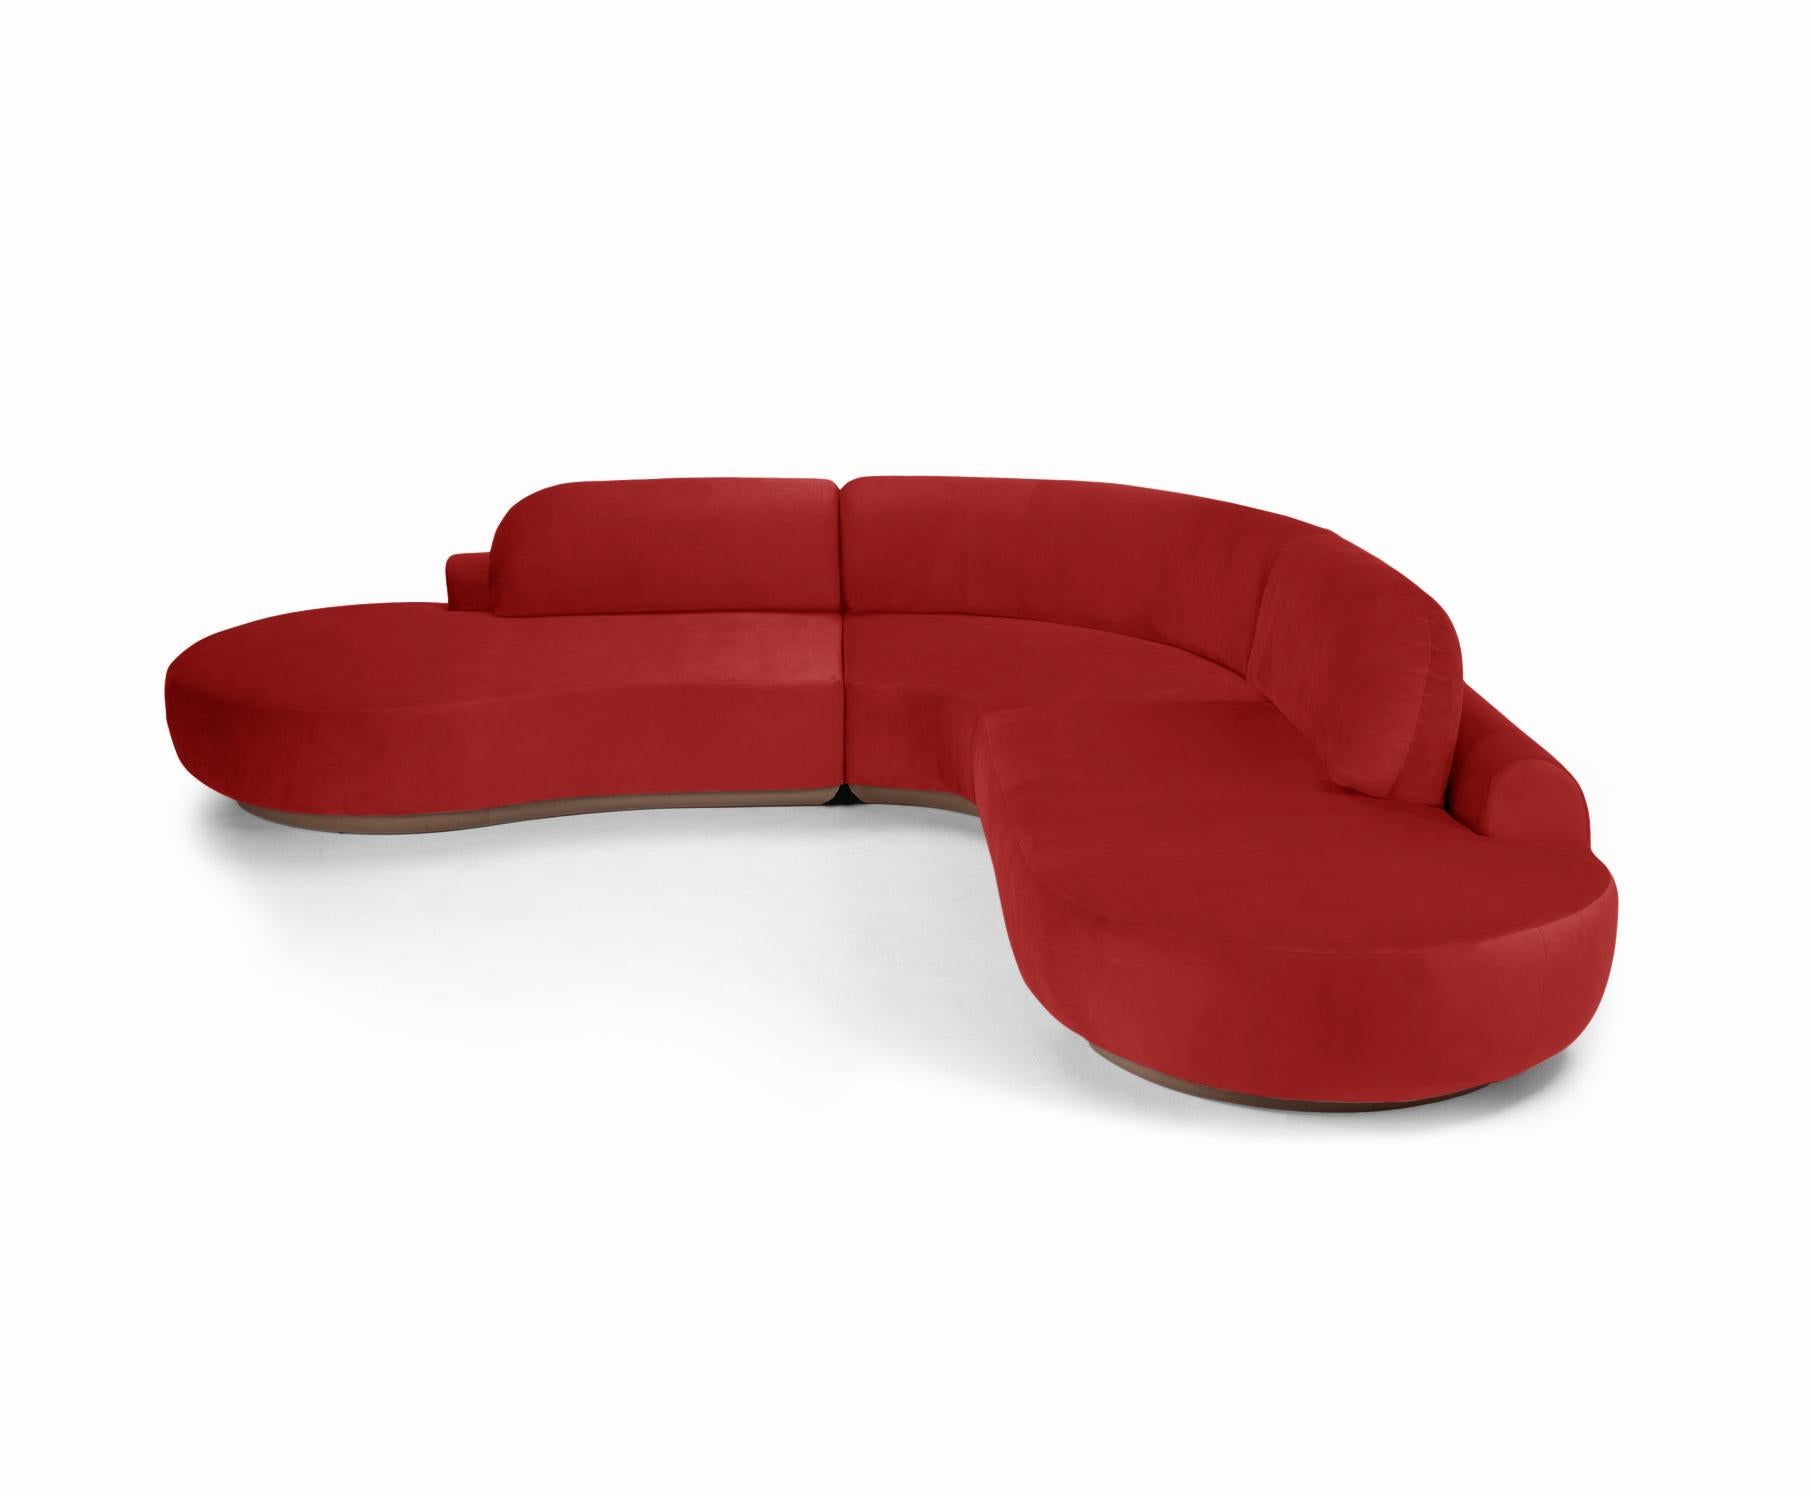 Le canapé sectionnel Naked est un canapé modulaire aux courbes invitantes et à l'assise confortable. Fabriqué à la main avec une base en bois massif. Le canapé sectionnel Naked est disponible dans un certain nombre de matériaux, de finitions et de